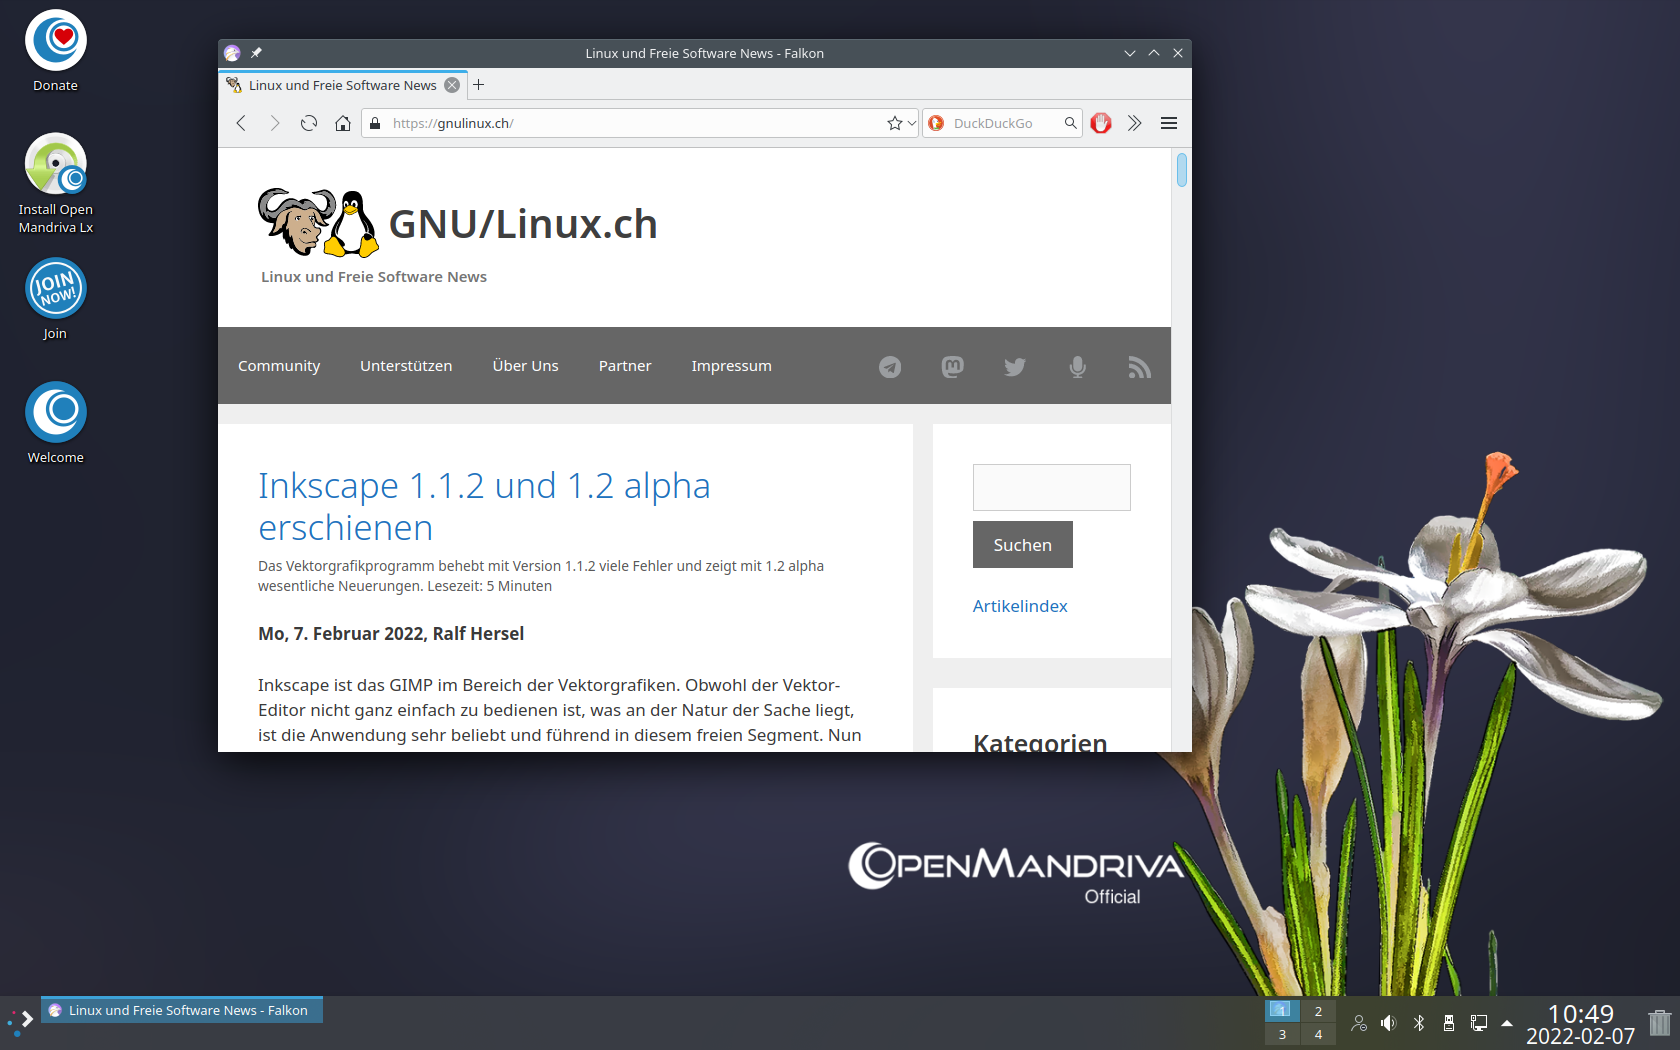 openmandriva lx 4.3 veröffentlicht